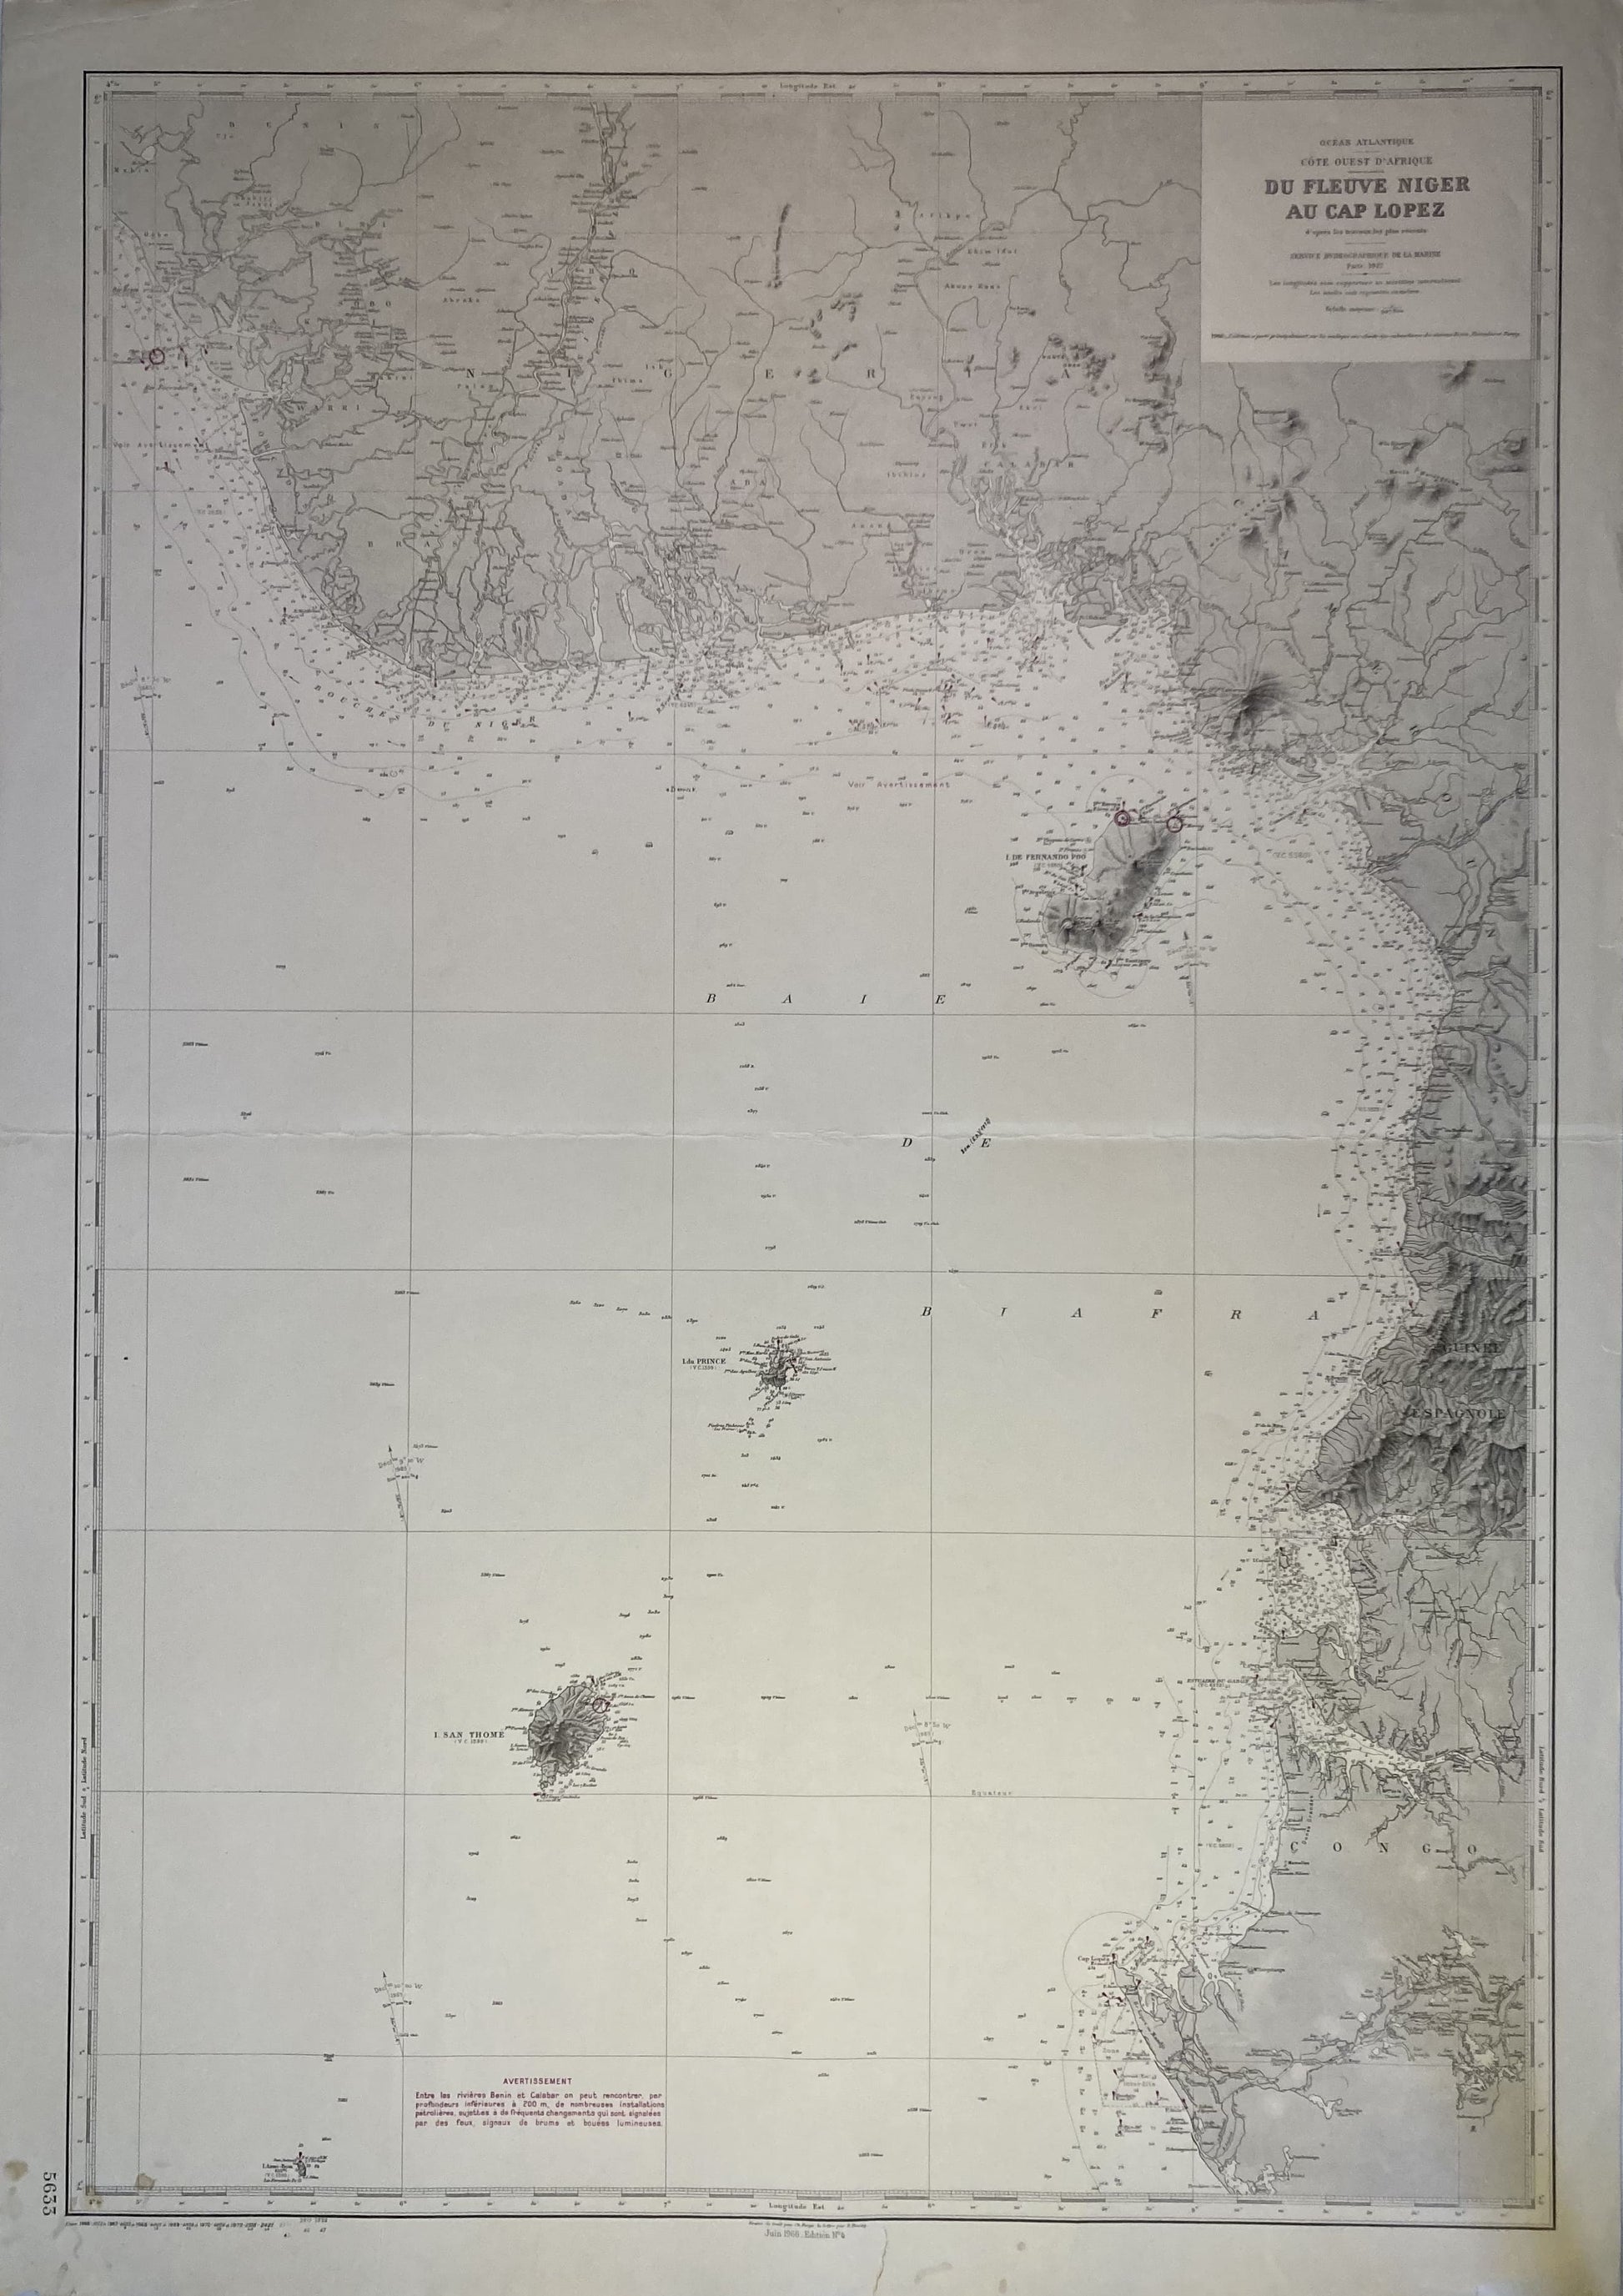 Carte Marine ancienne du fleuve Niger au cap Lopez